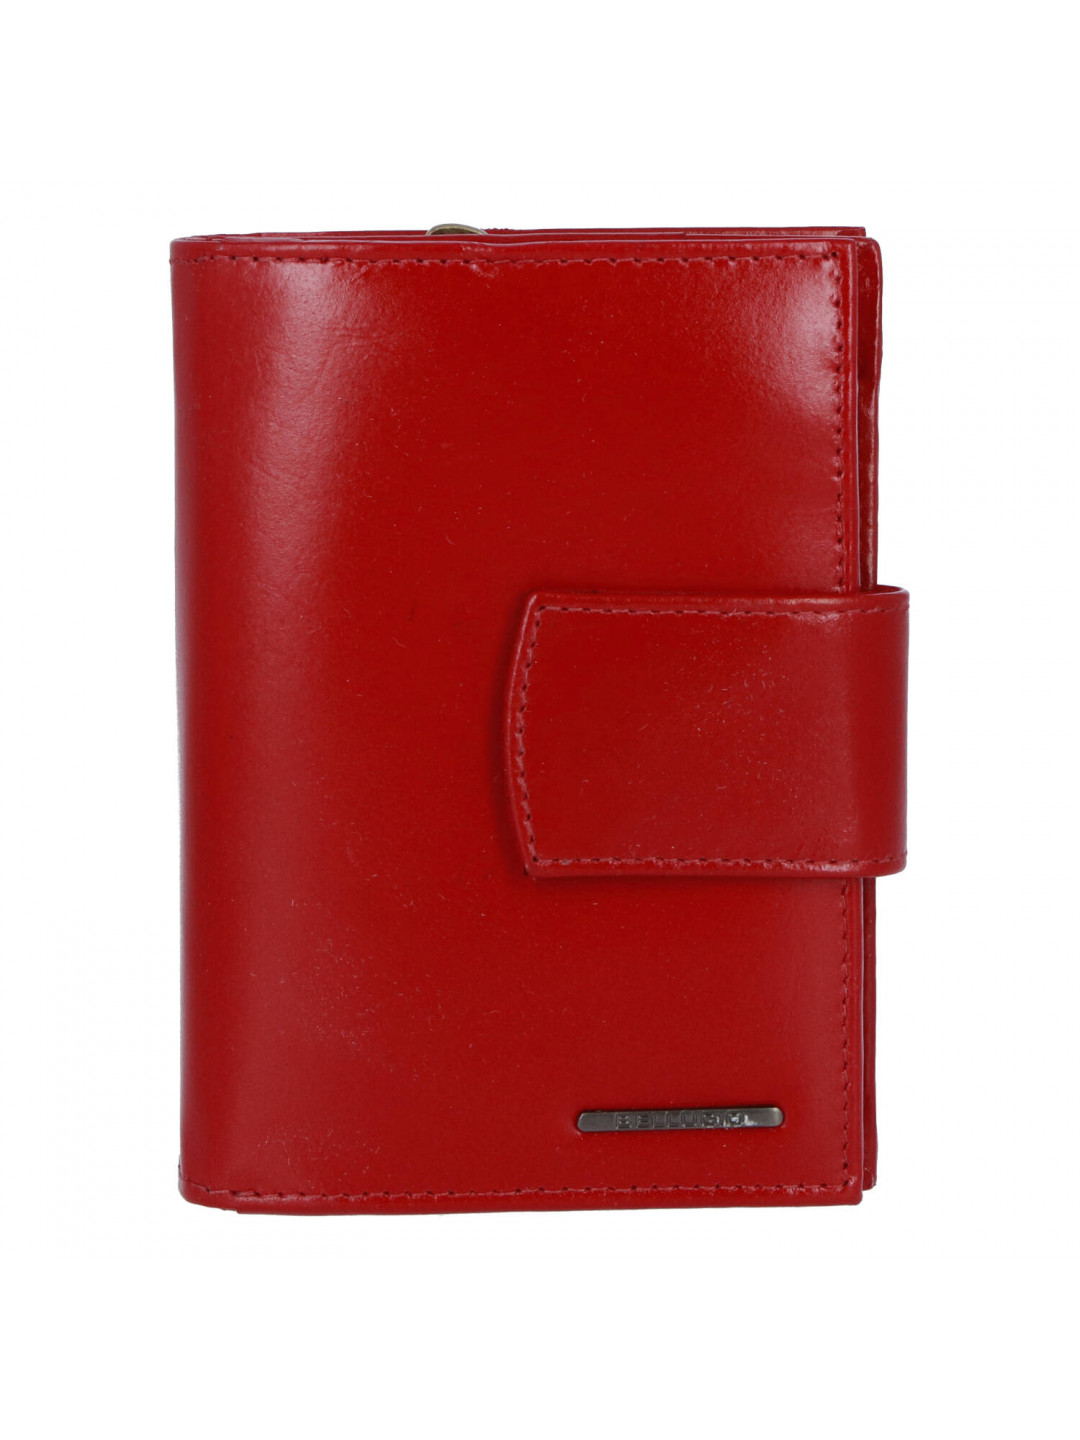 Pěkná dámská kožená peněženka Sindy červená